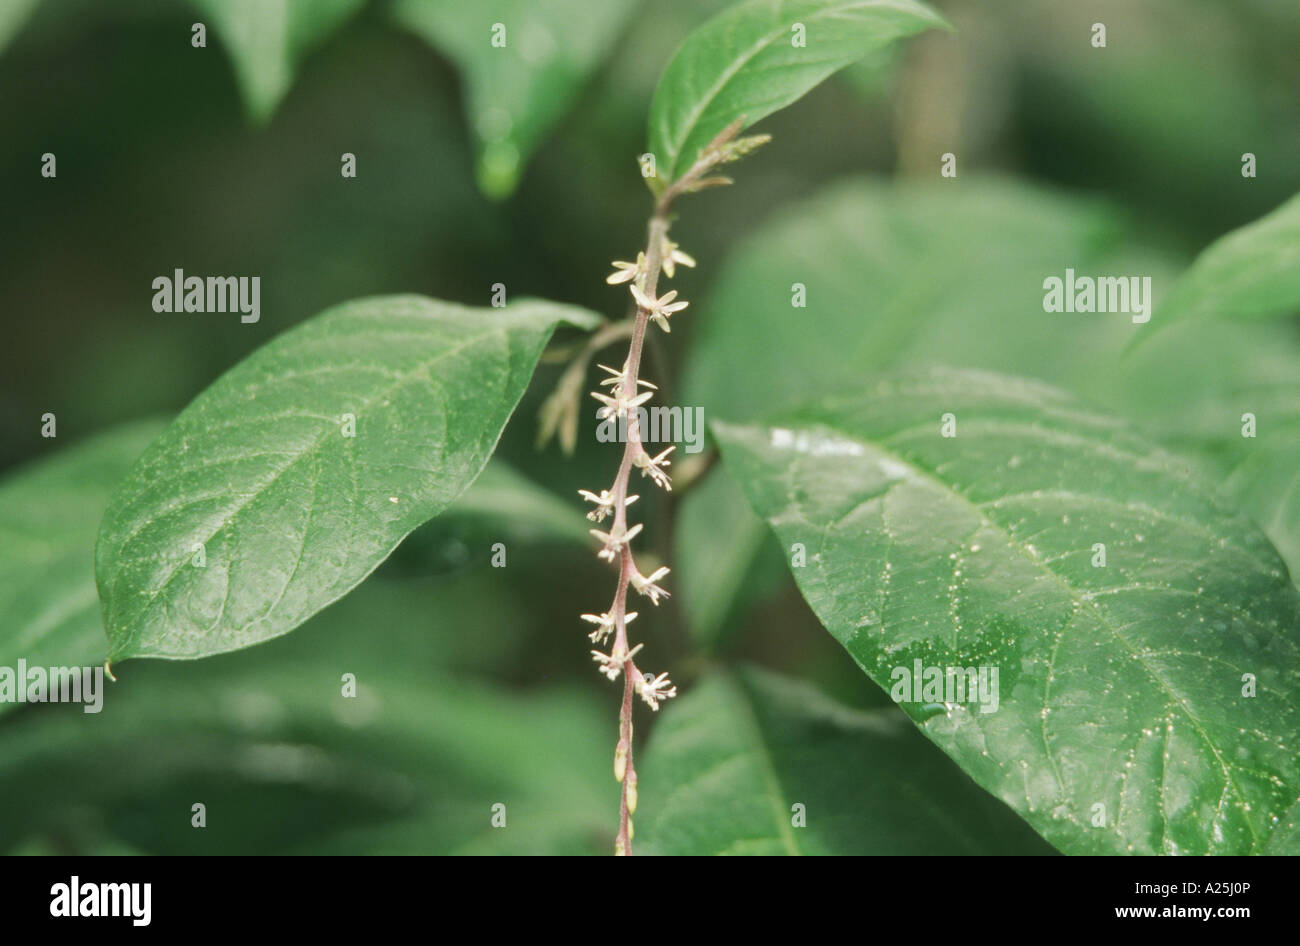 Anamu (Petiveria alliacea), leaves and blossoms Stock Photo